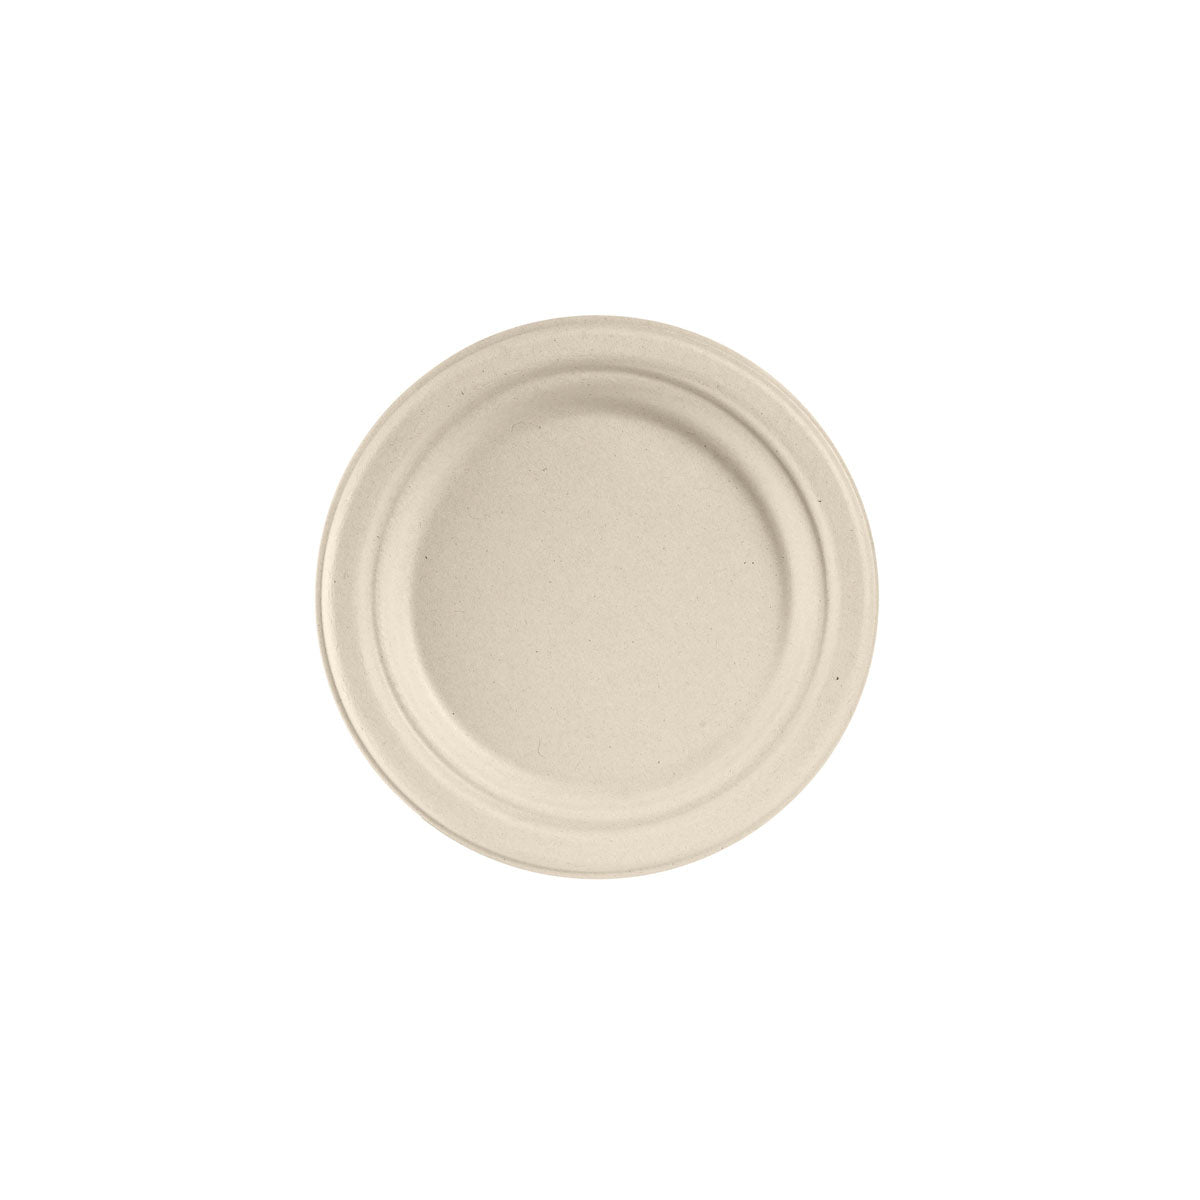 Lapos tányér - Lapostányér barna 180 mm - 50 db/cs - Greenstic